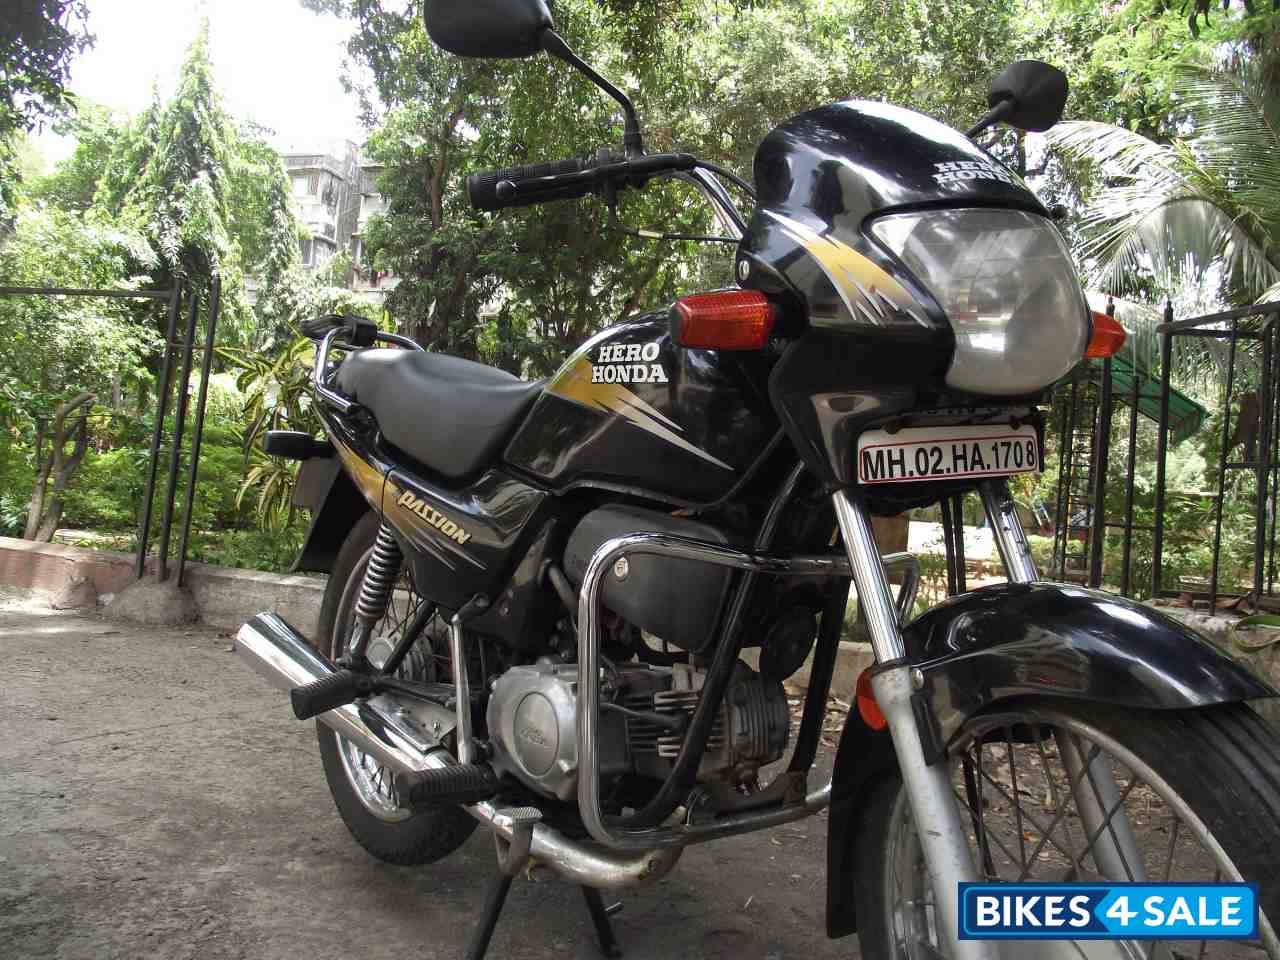 Second hand honda bikes in mumbai #3